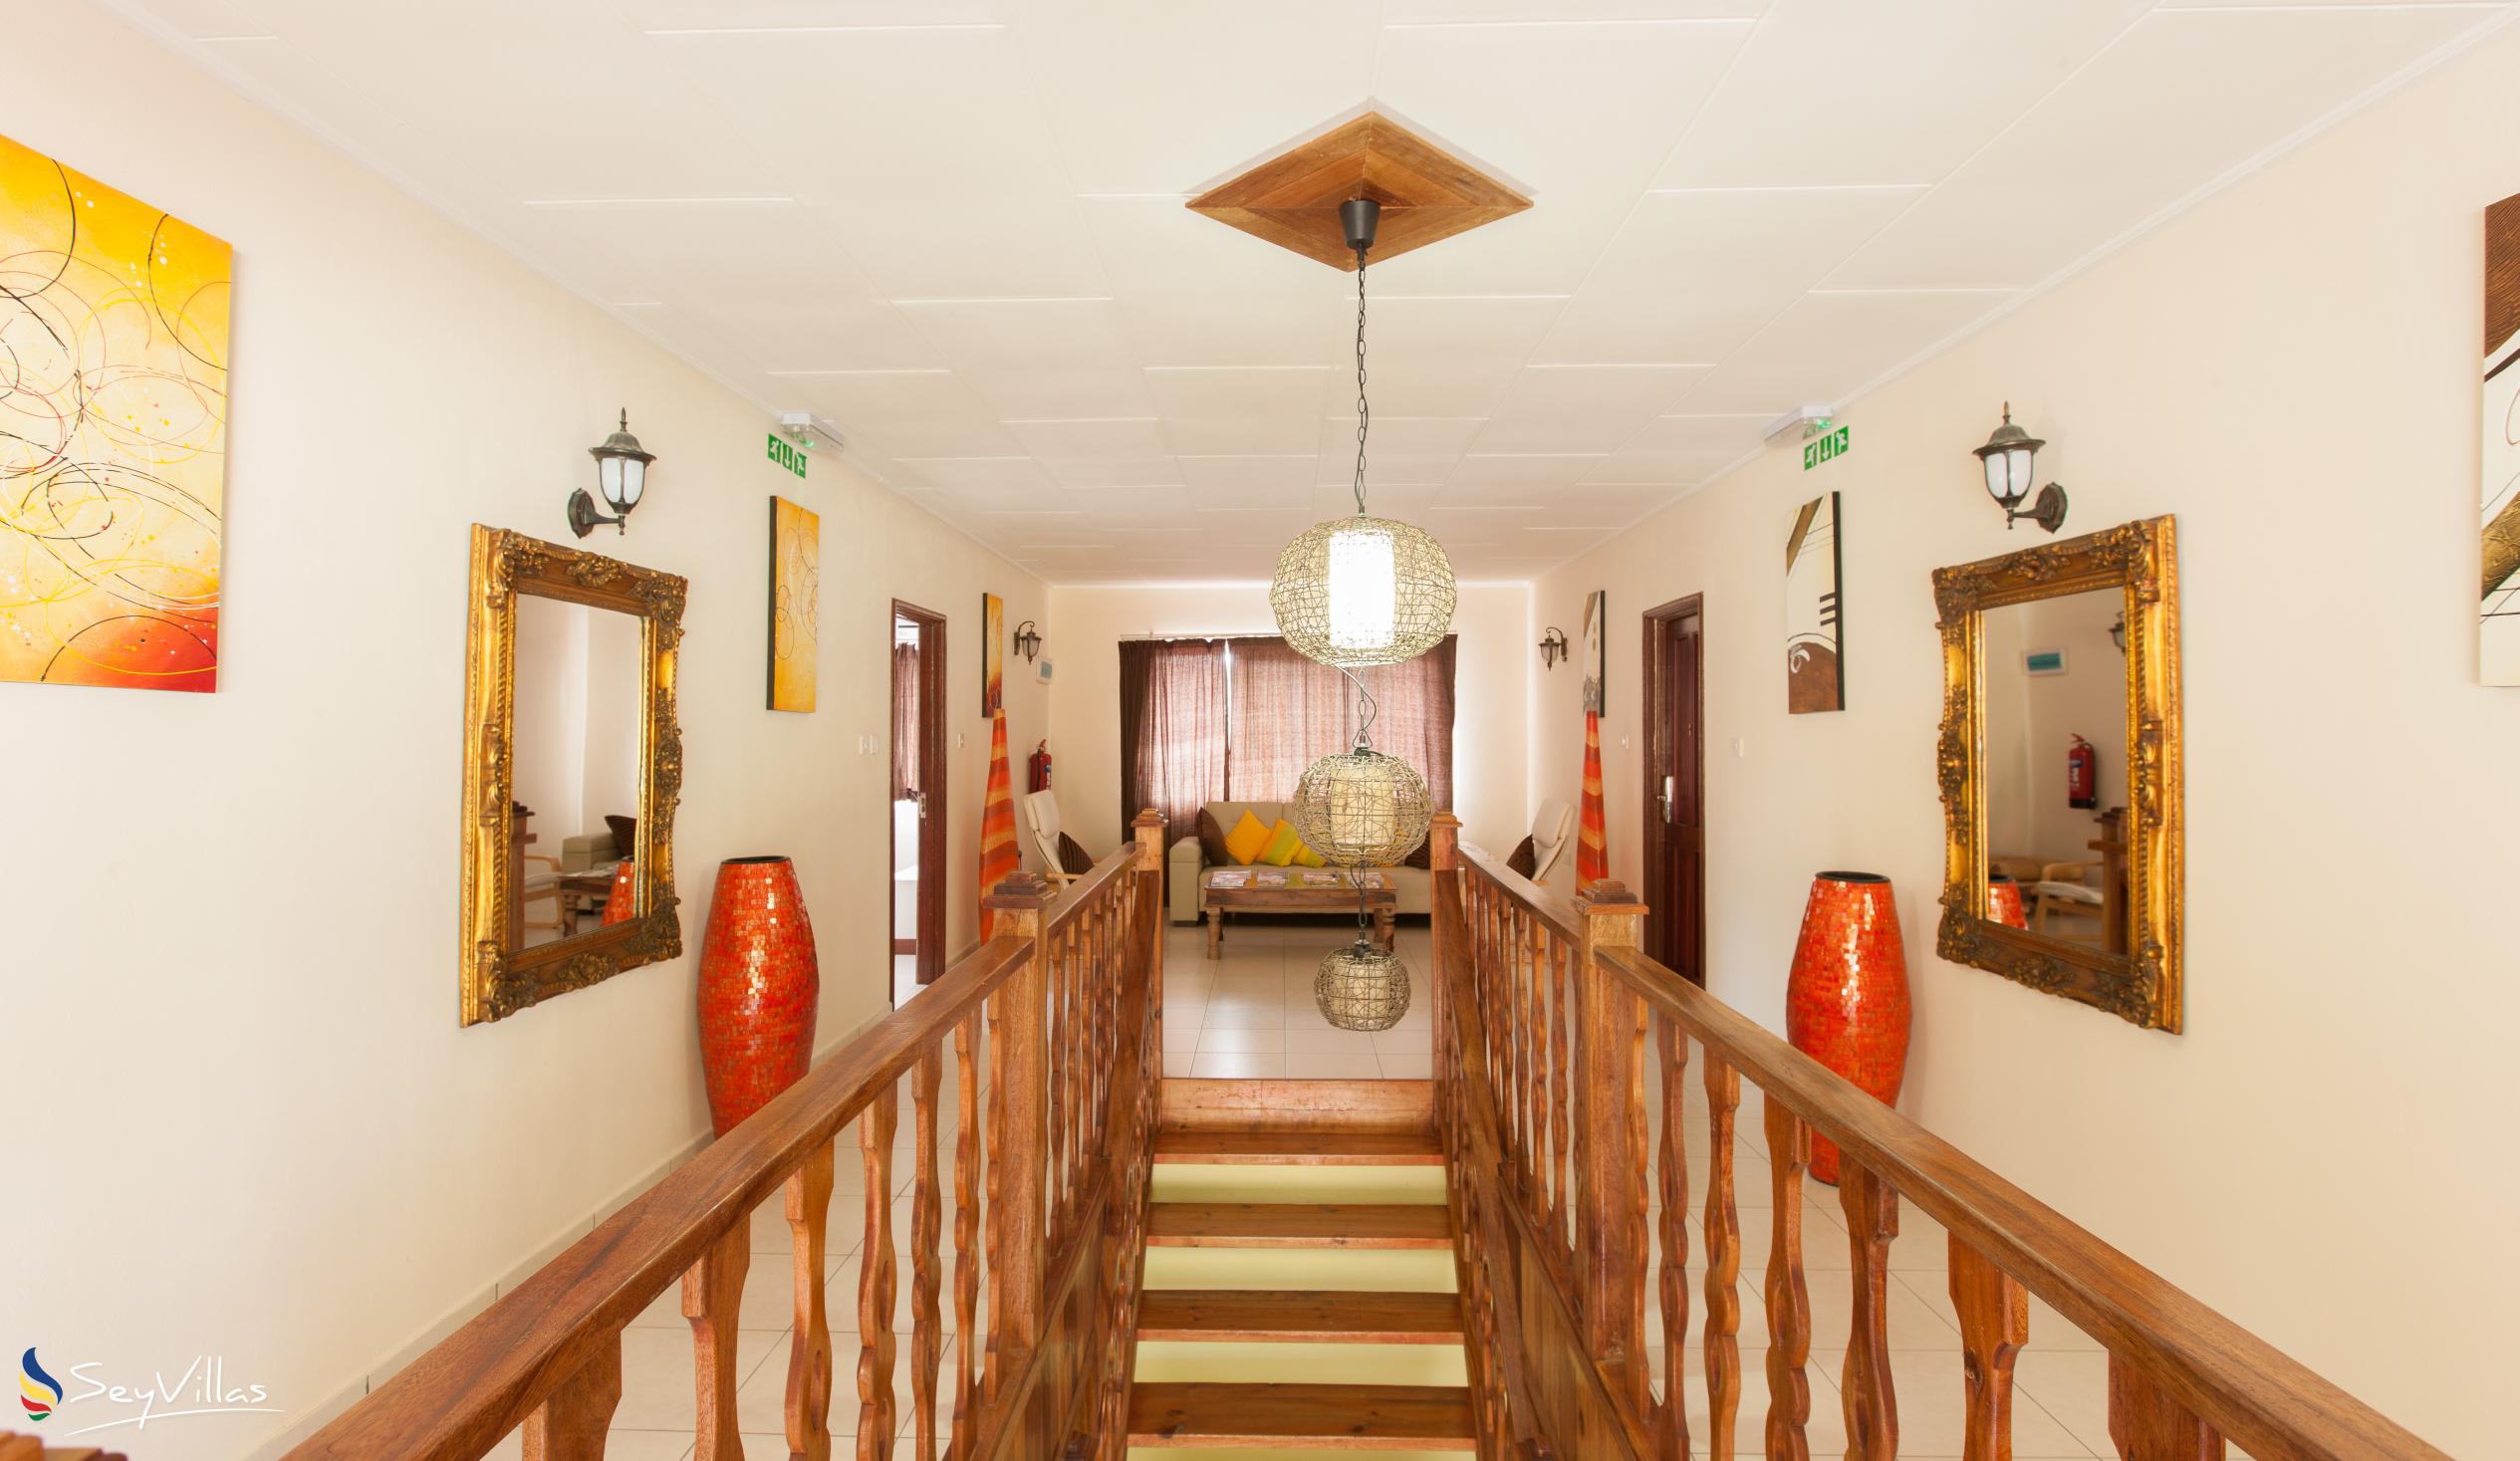 Photo 12: Villa Authentique - Indoor area - La Digue (Seychelles)